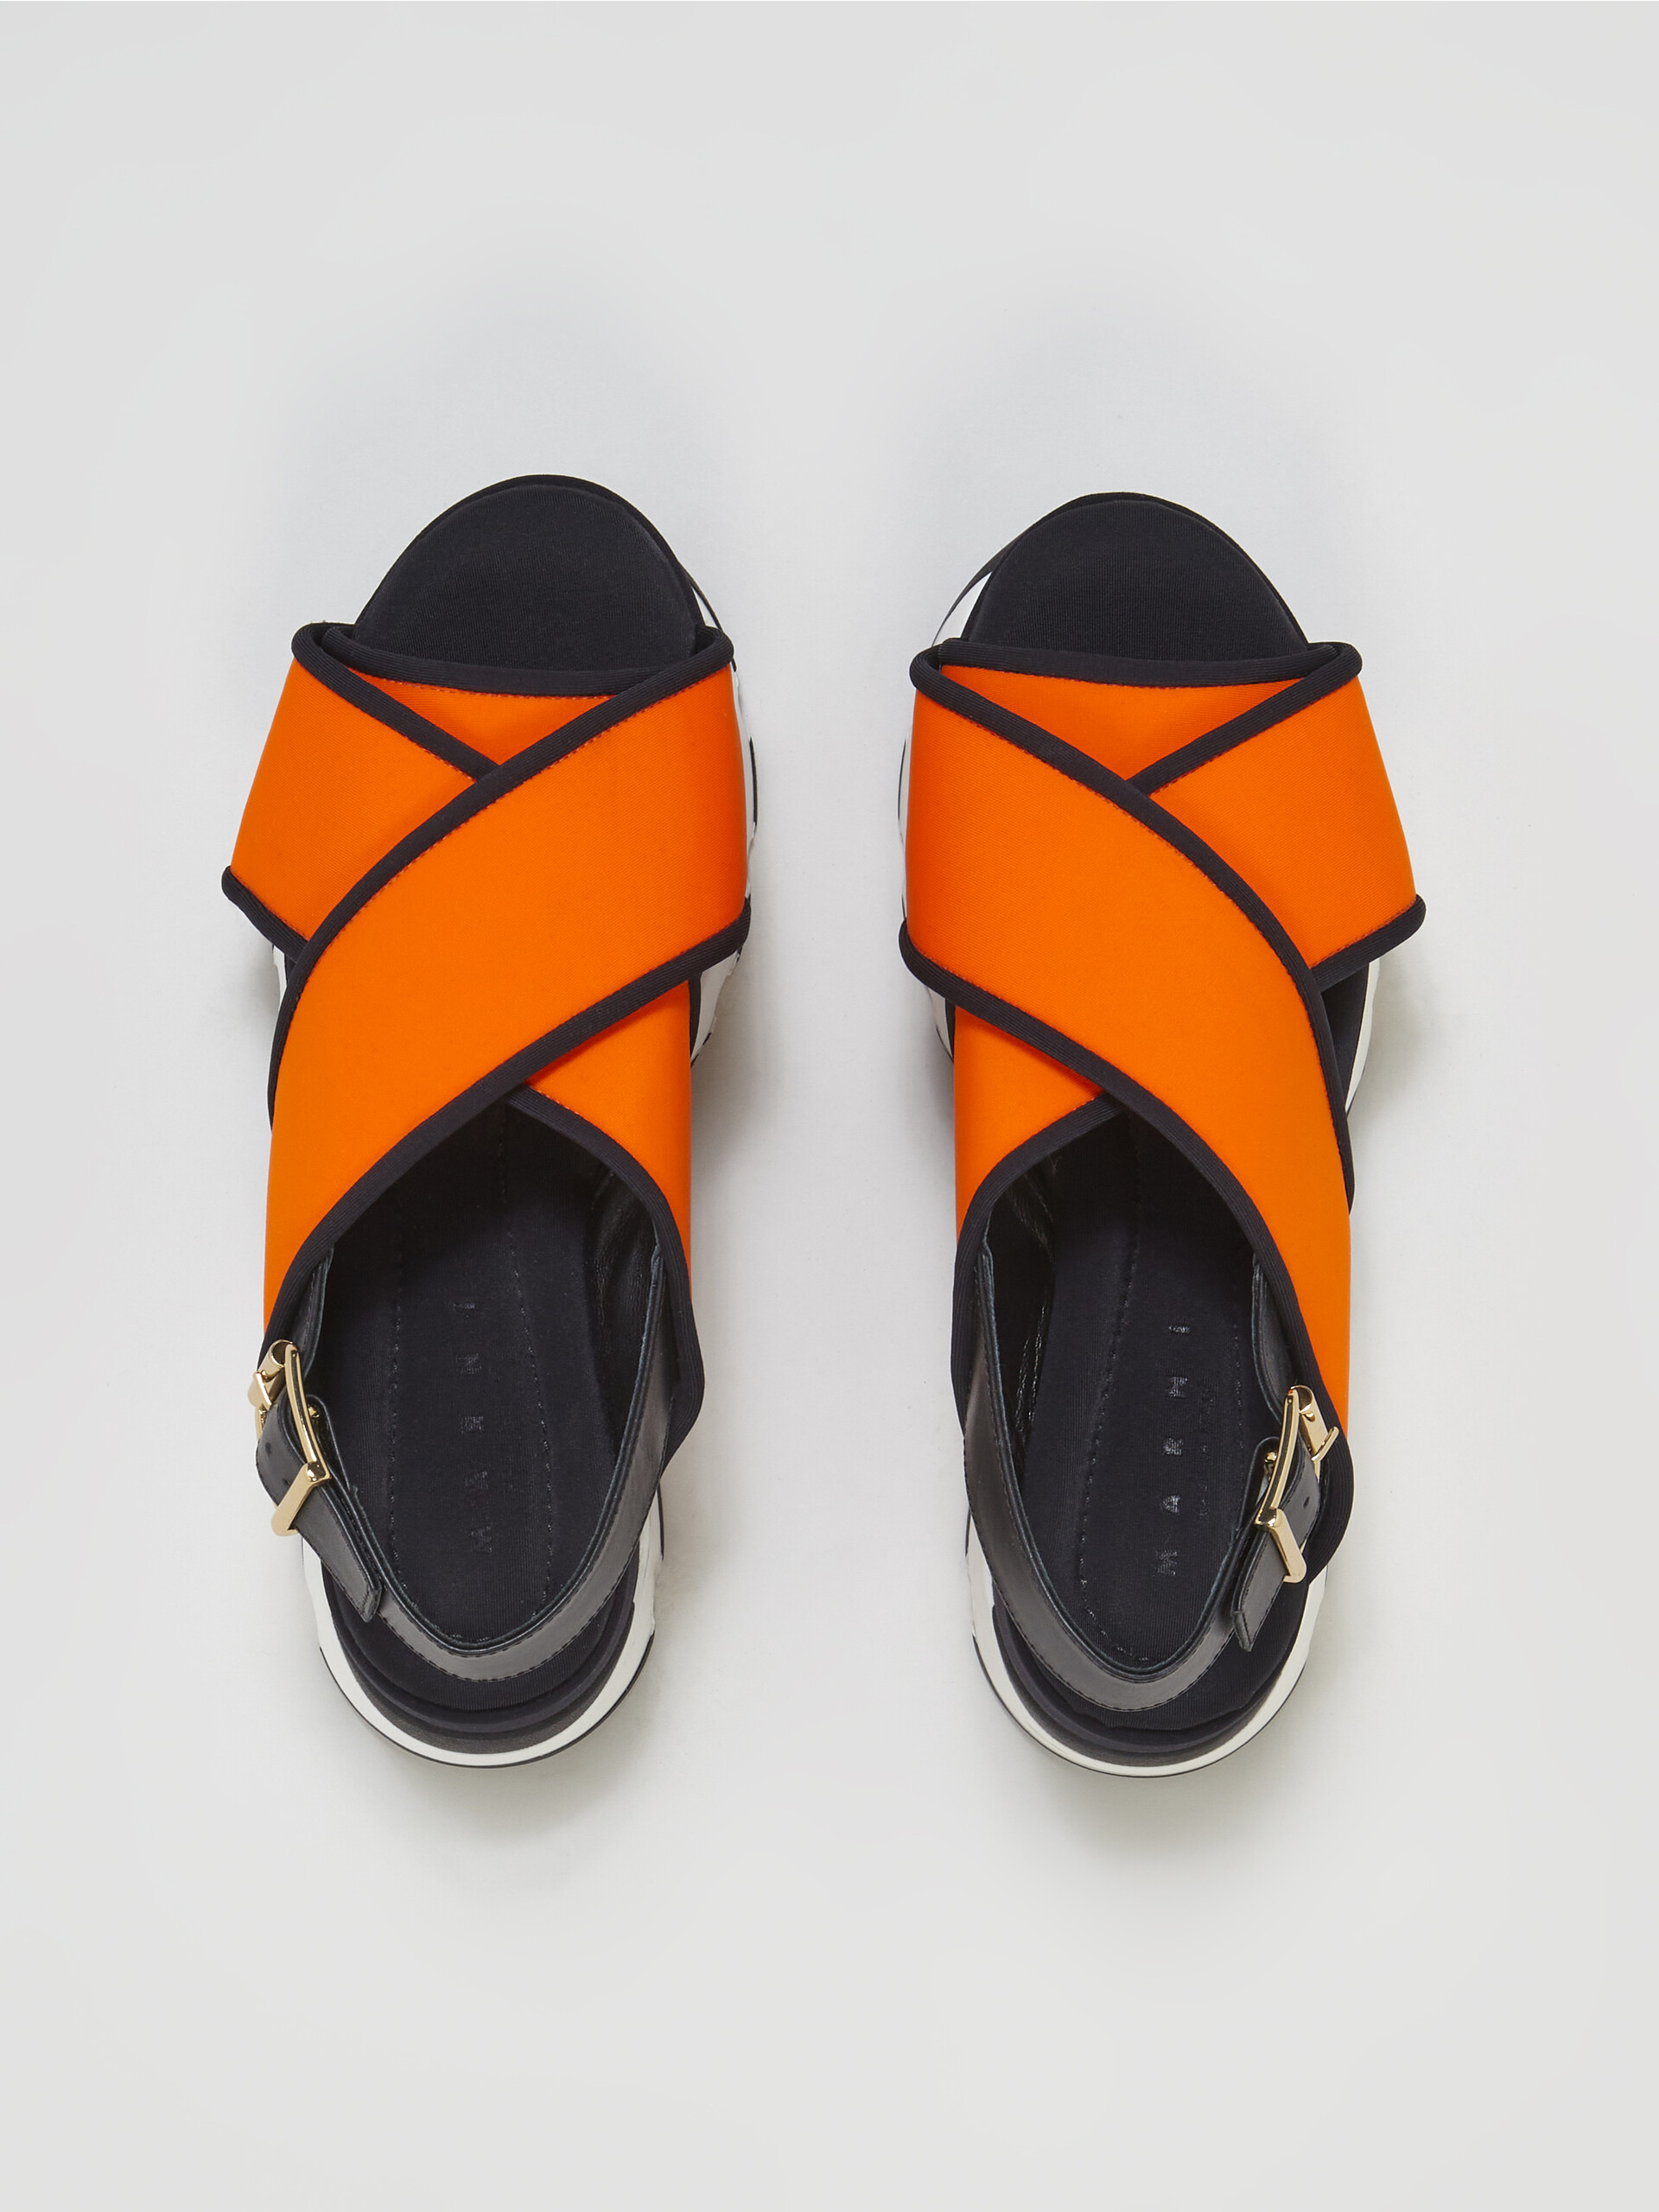 Sandalia de tejido técnico naranja con cuña entrecruzada - Sandalias - Image 4